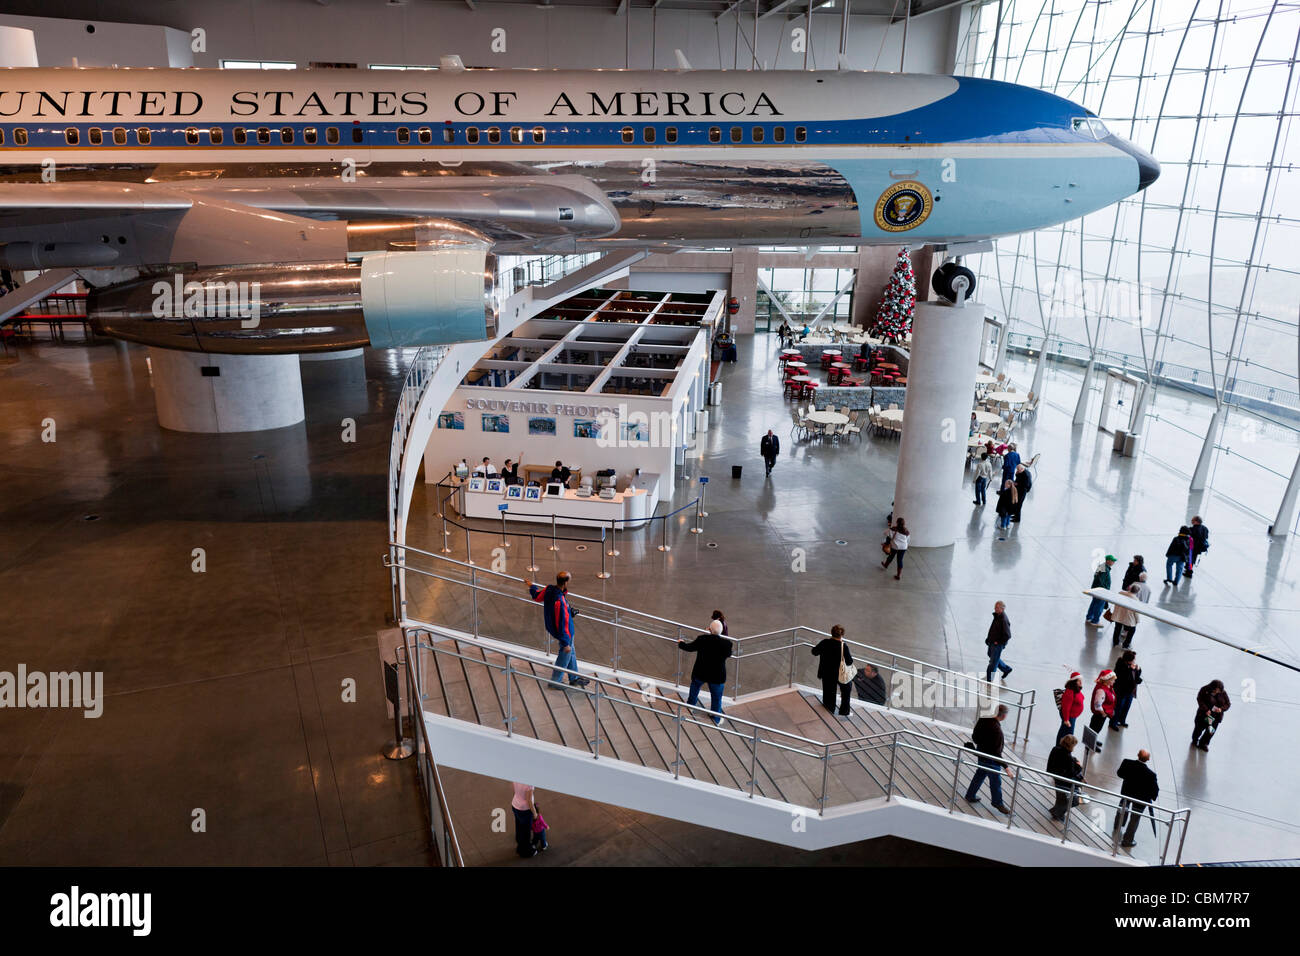 États-unis, Californie, Simi Valley, la Ronald Reagan Presidential Library, Boeing 707 de l'Armée de l'une présidence Reagan Banque D'Images